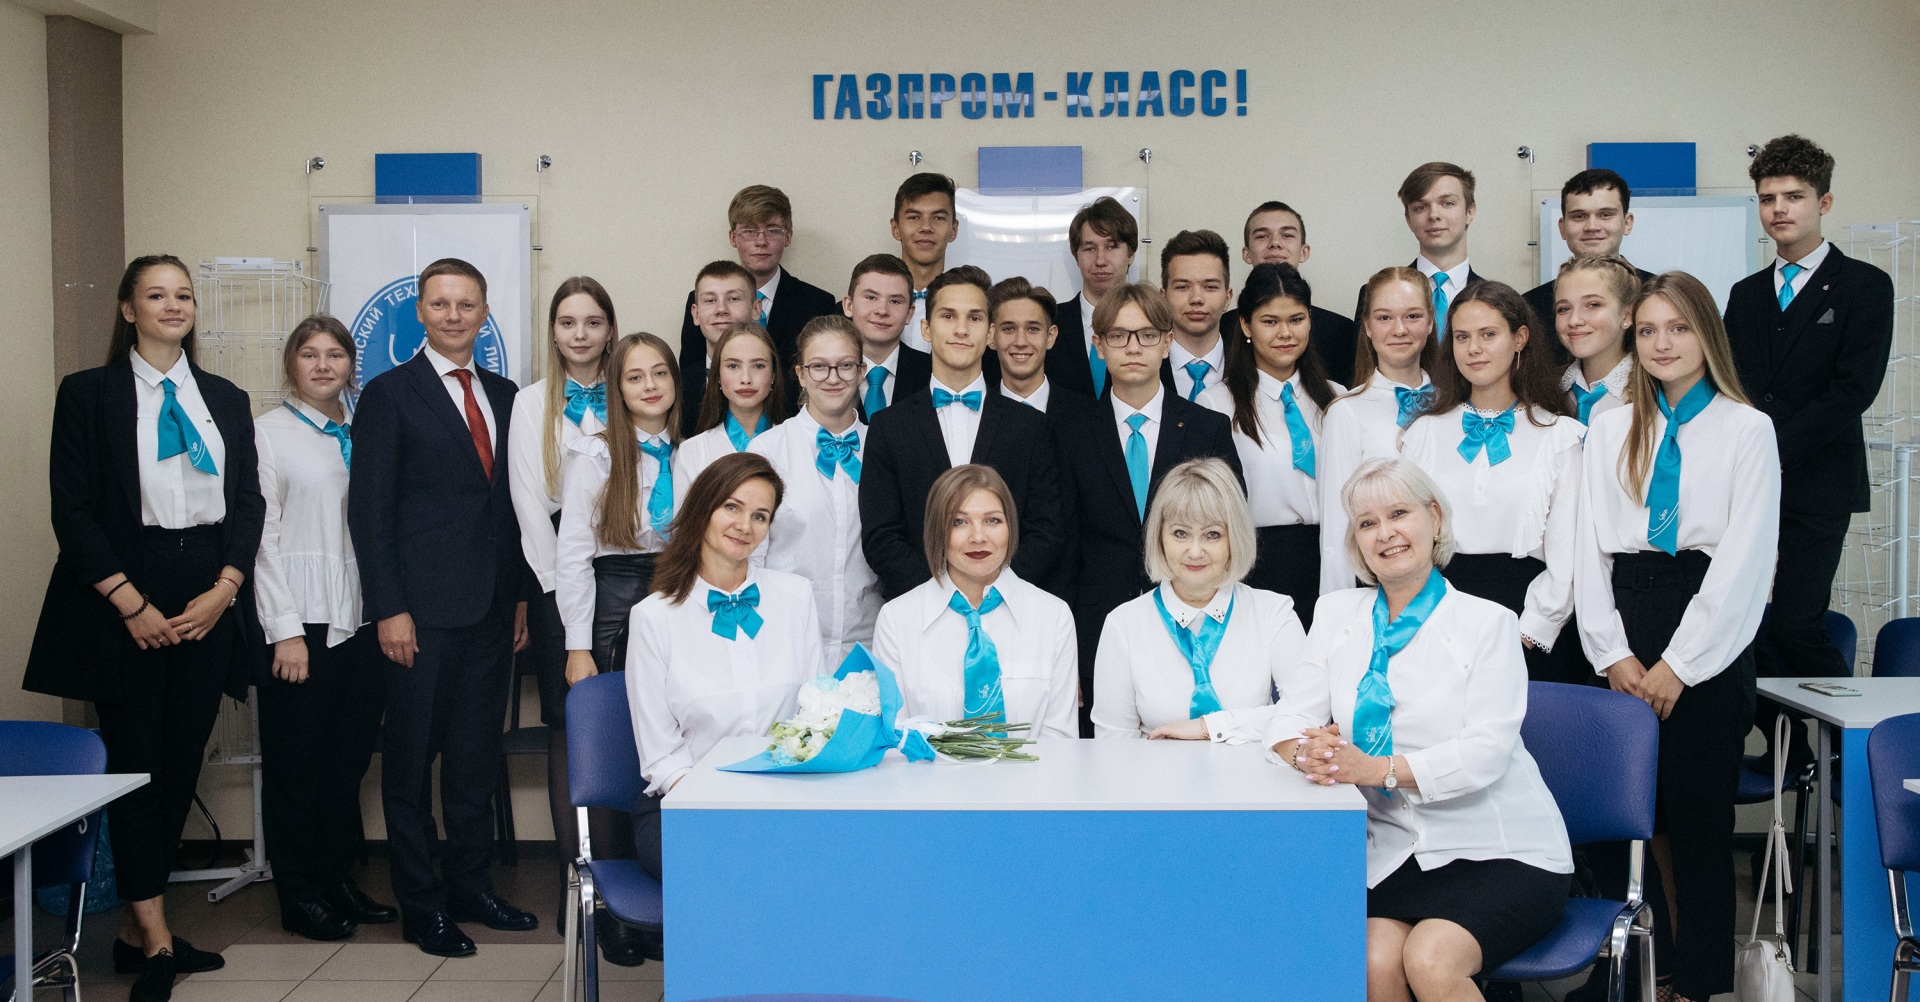 1-sentyabrya-gazprom-klass-foto-M.-Sivakova-11.jpg